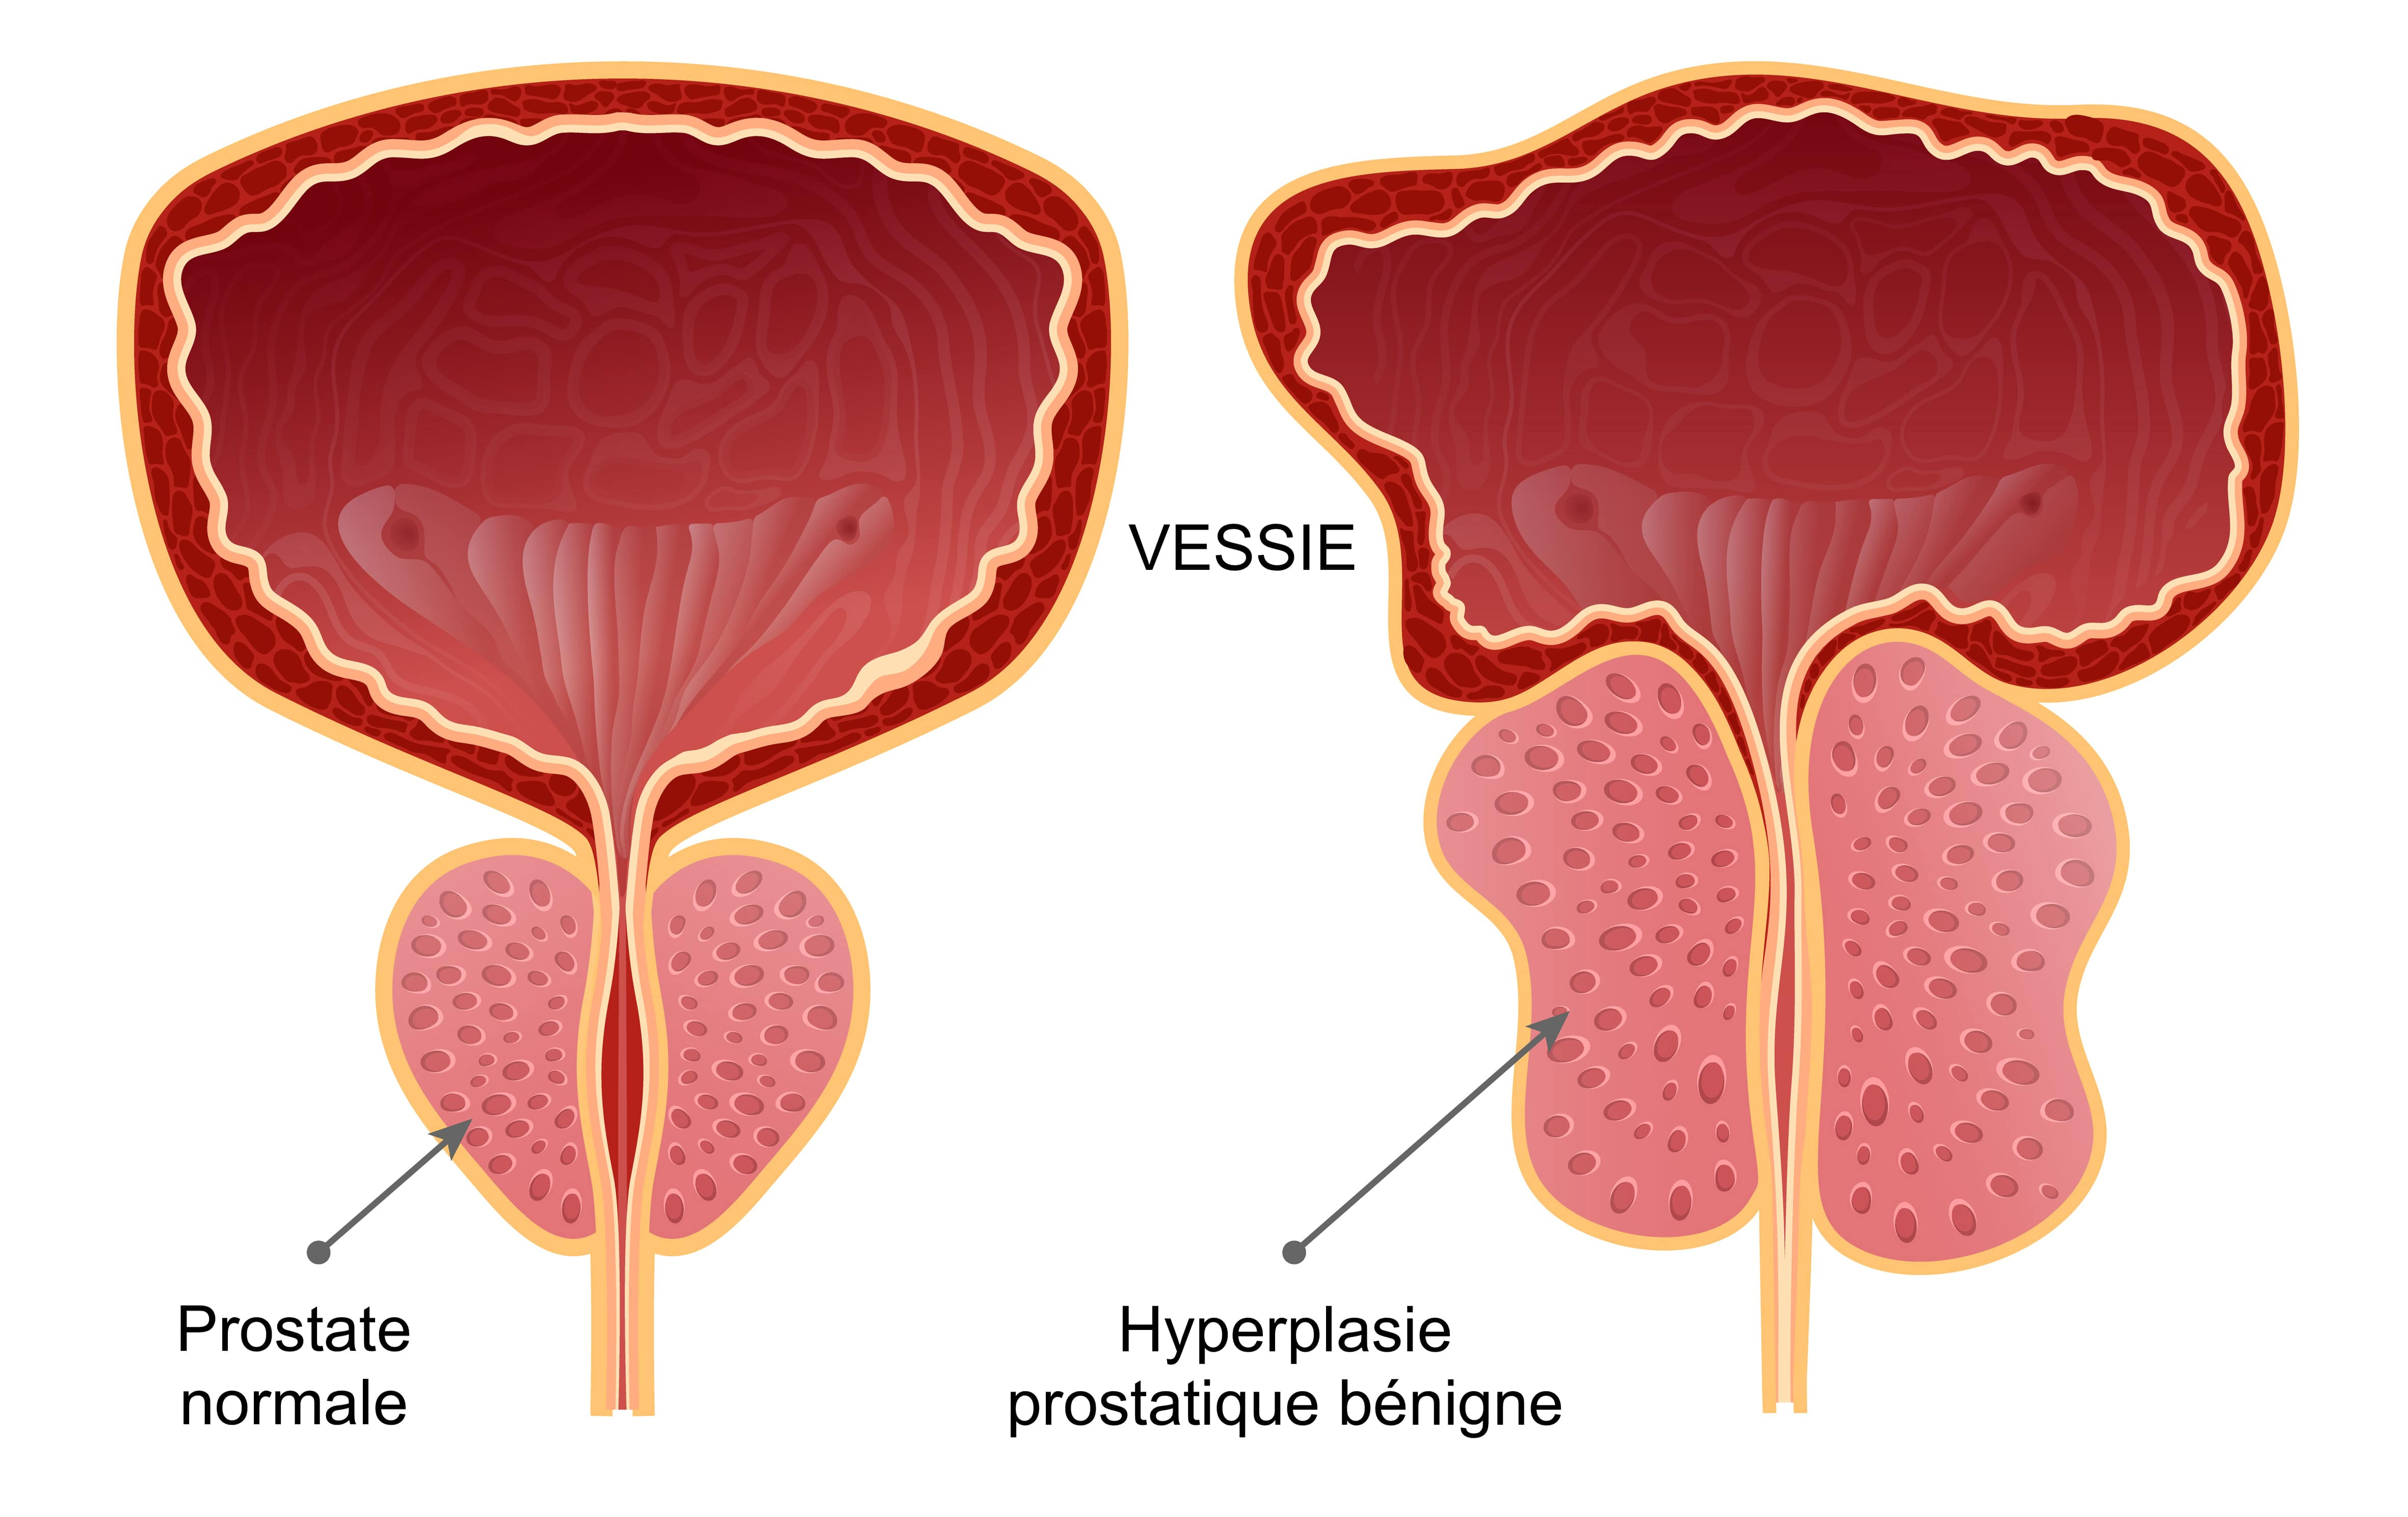 schéma : Hyperplasie de la prostate bénigne comparée à une Prostate normale